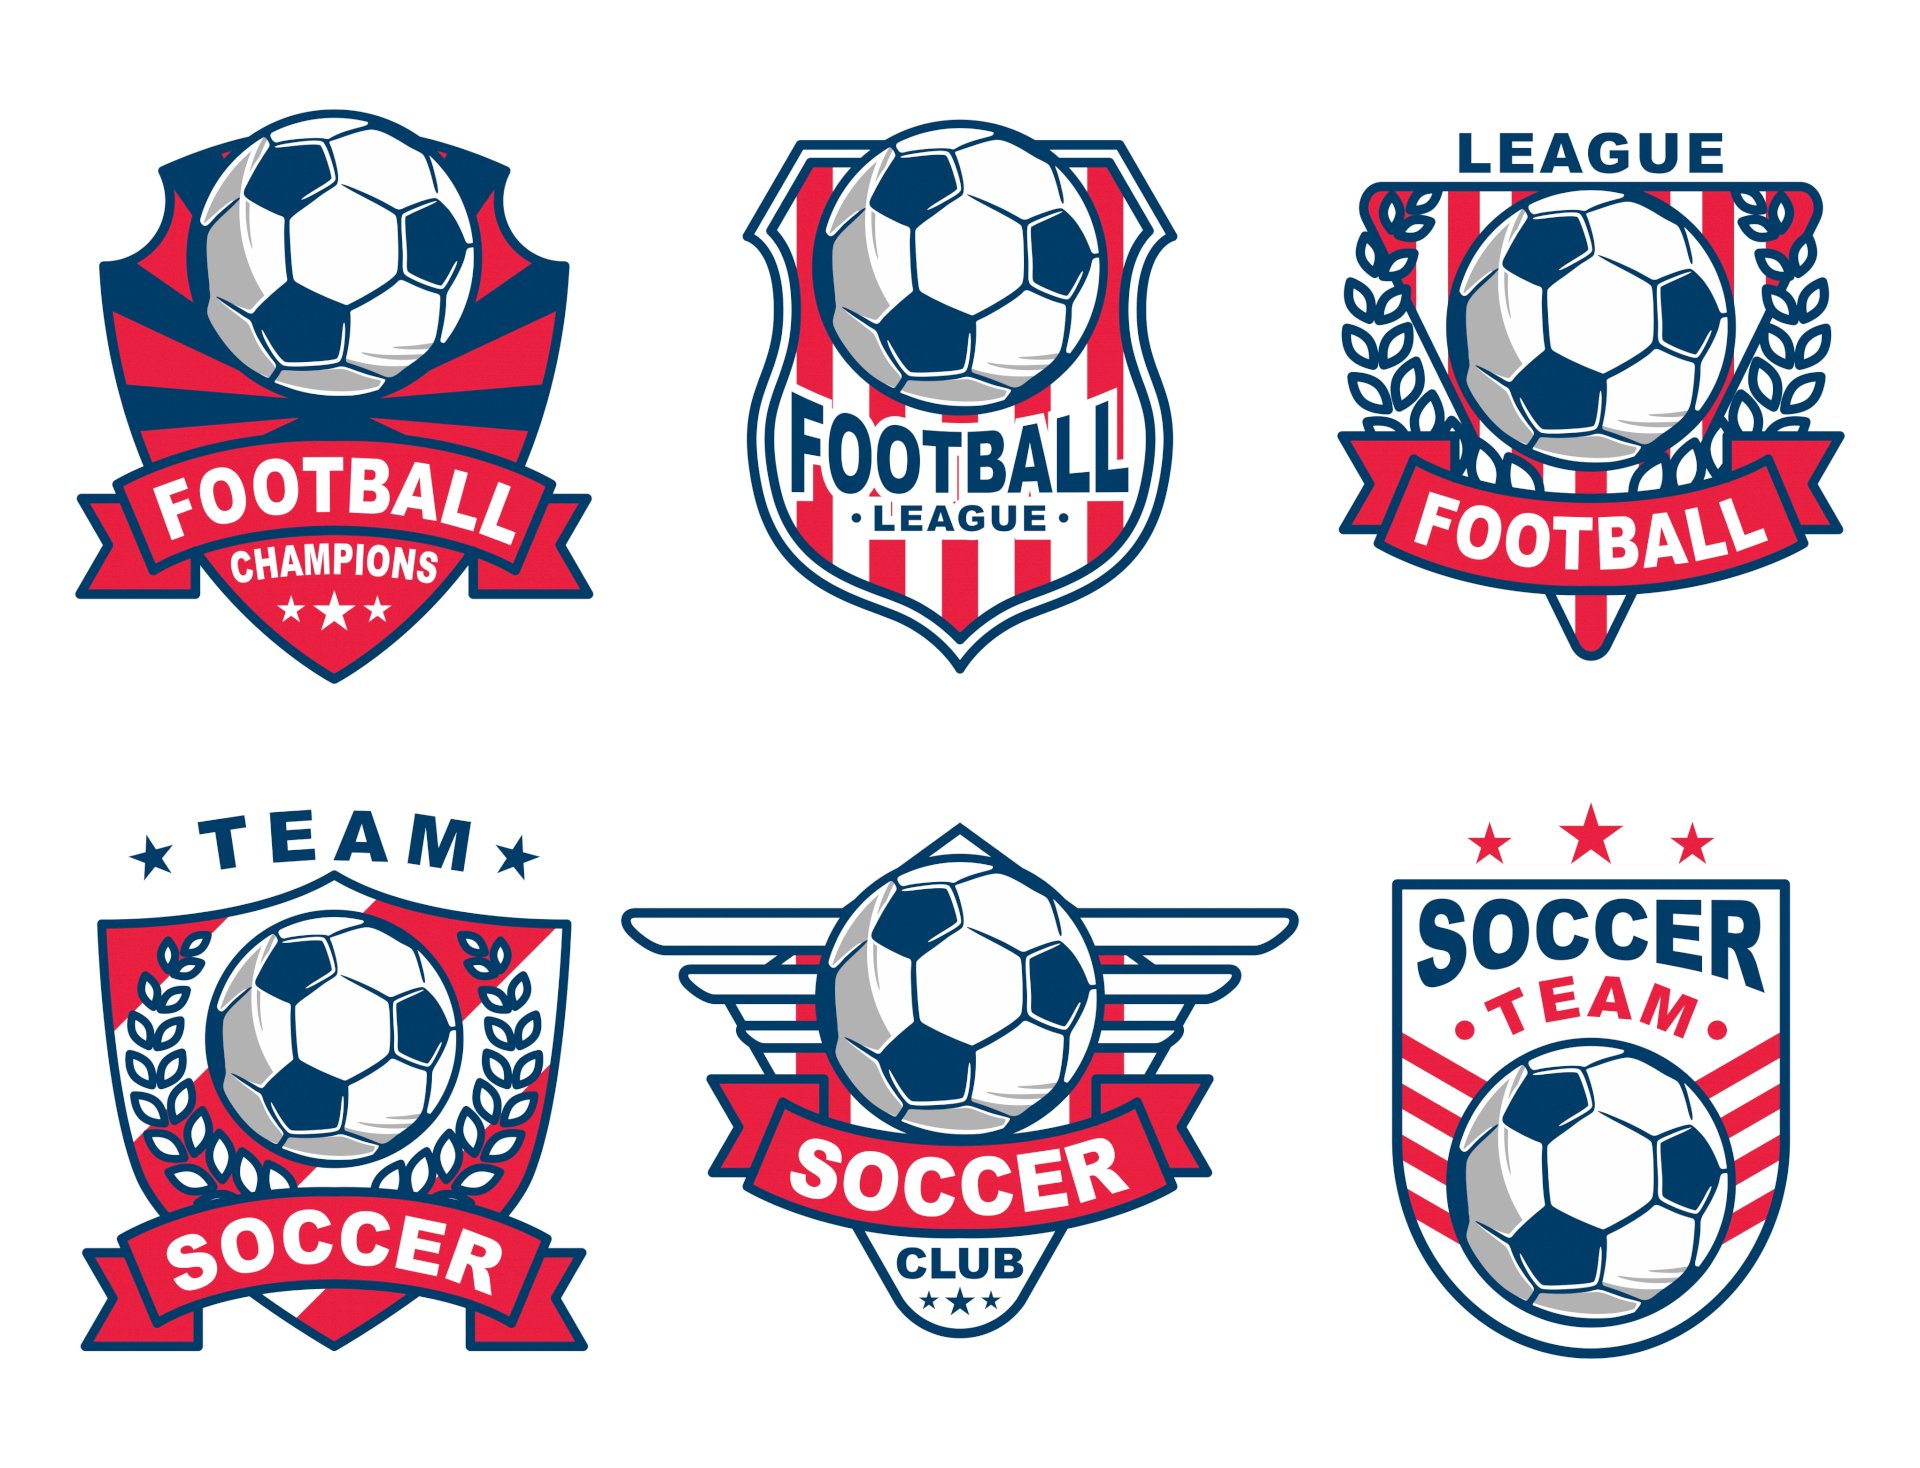 Logo đội bóng thể hiện được tính cách và tinh thần của mỗi đội bóng. Hãy xem những ảnh về logo đội bóng để hiểu thêm về đội mình yêu thích.